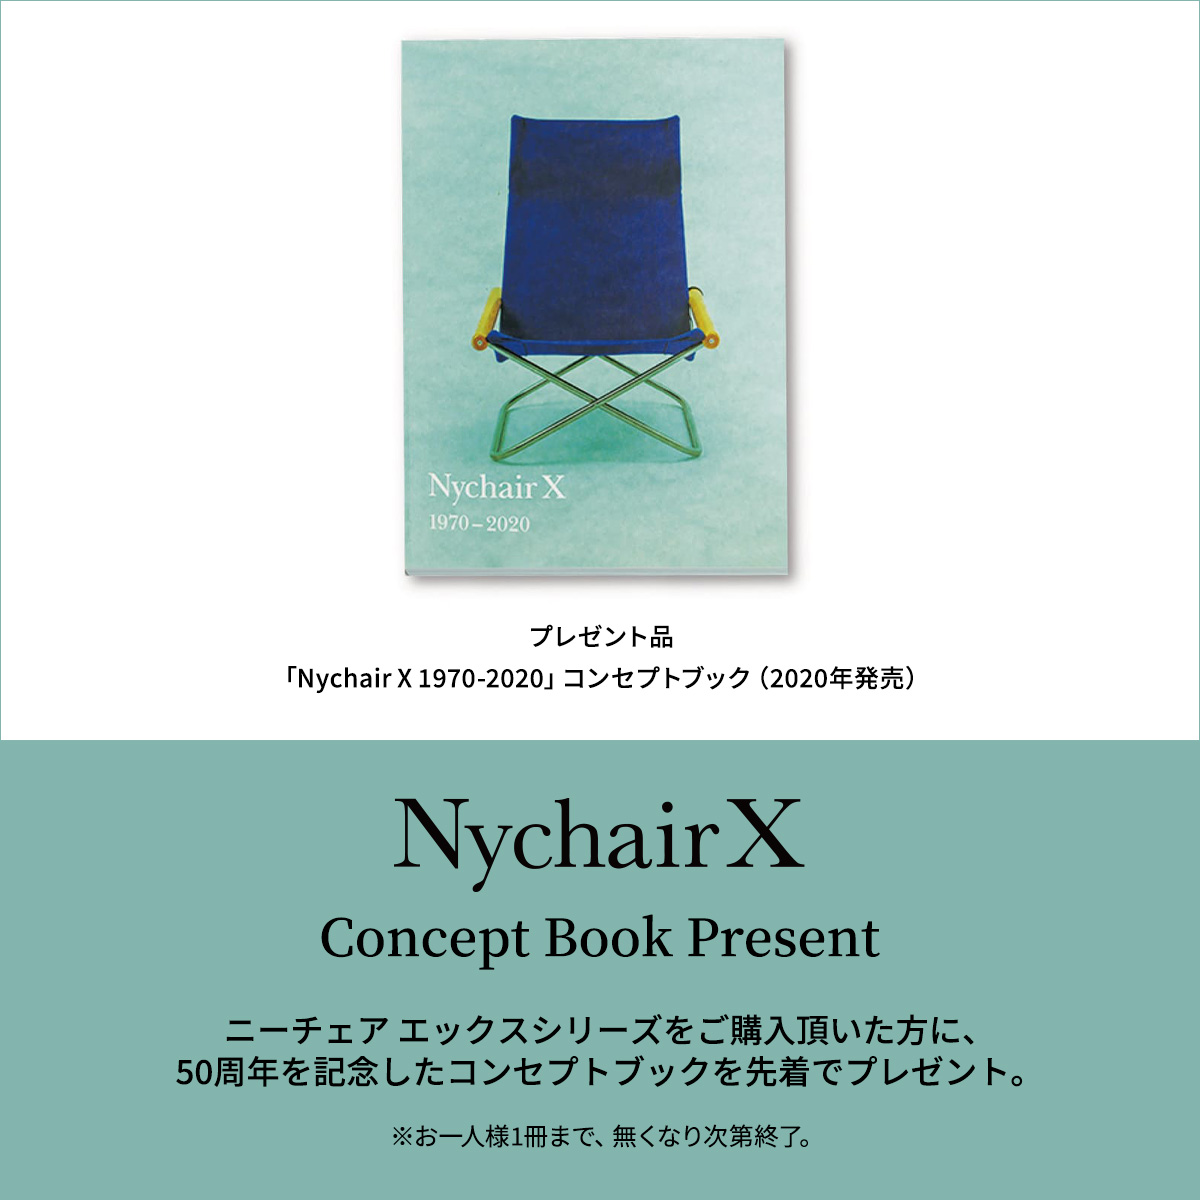 ニーチェアエックス 50周年記念 コンセプトブック「Nychir X 1970-2020」プレゼント